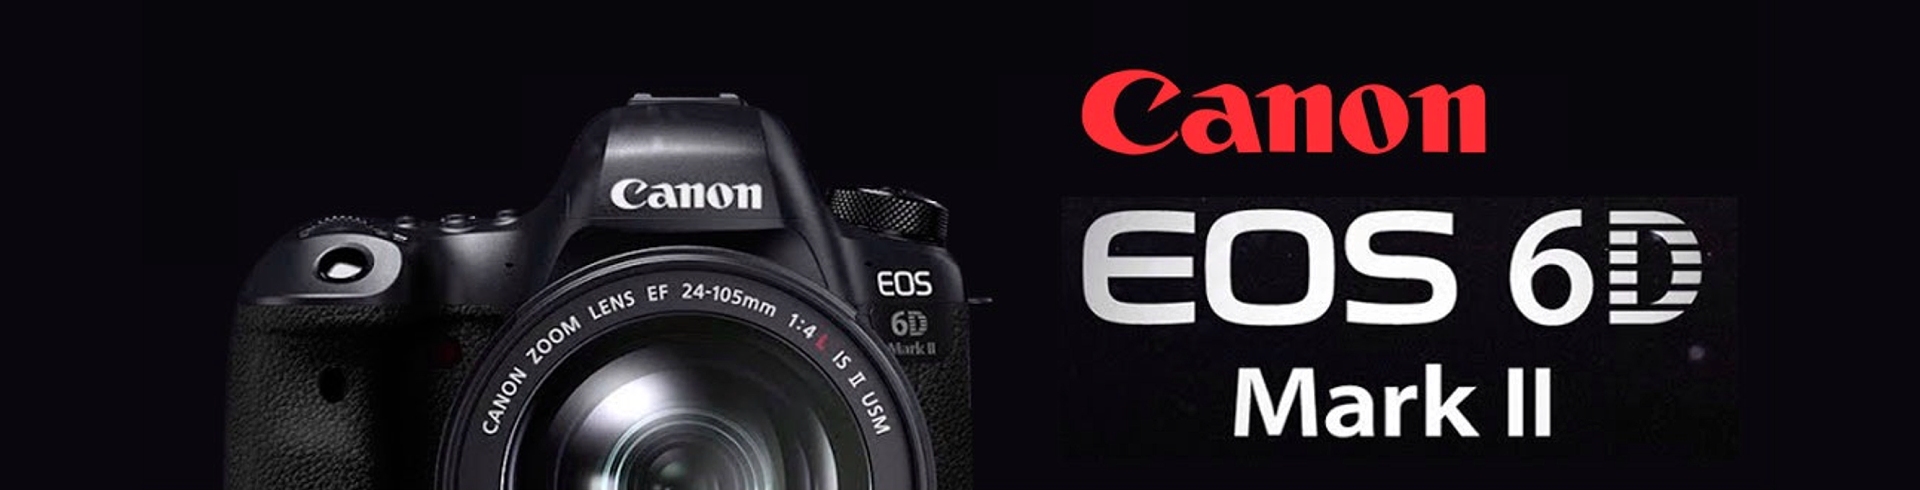 Immagini campione Canon EOS 6D Mark II